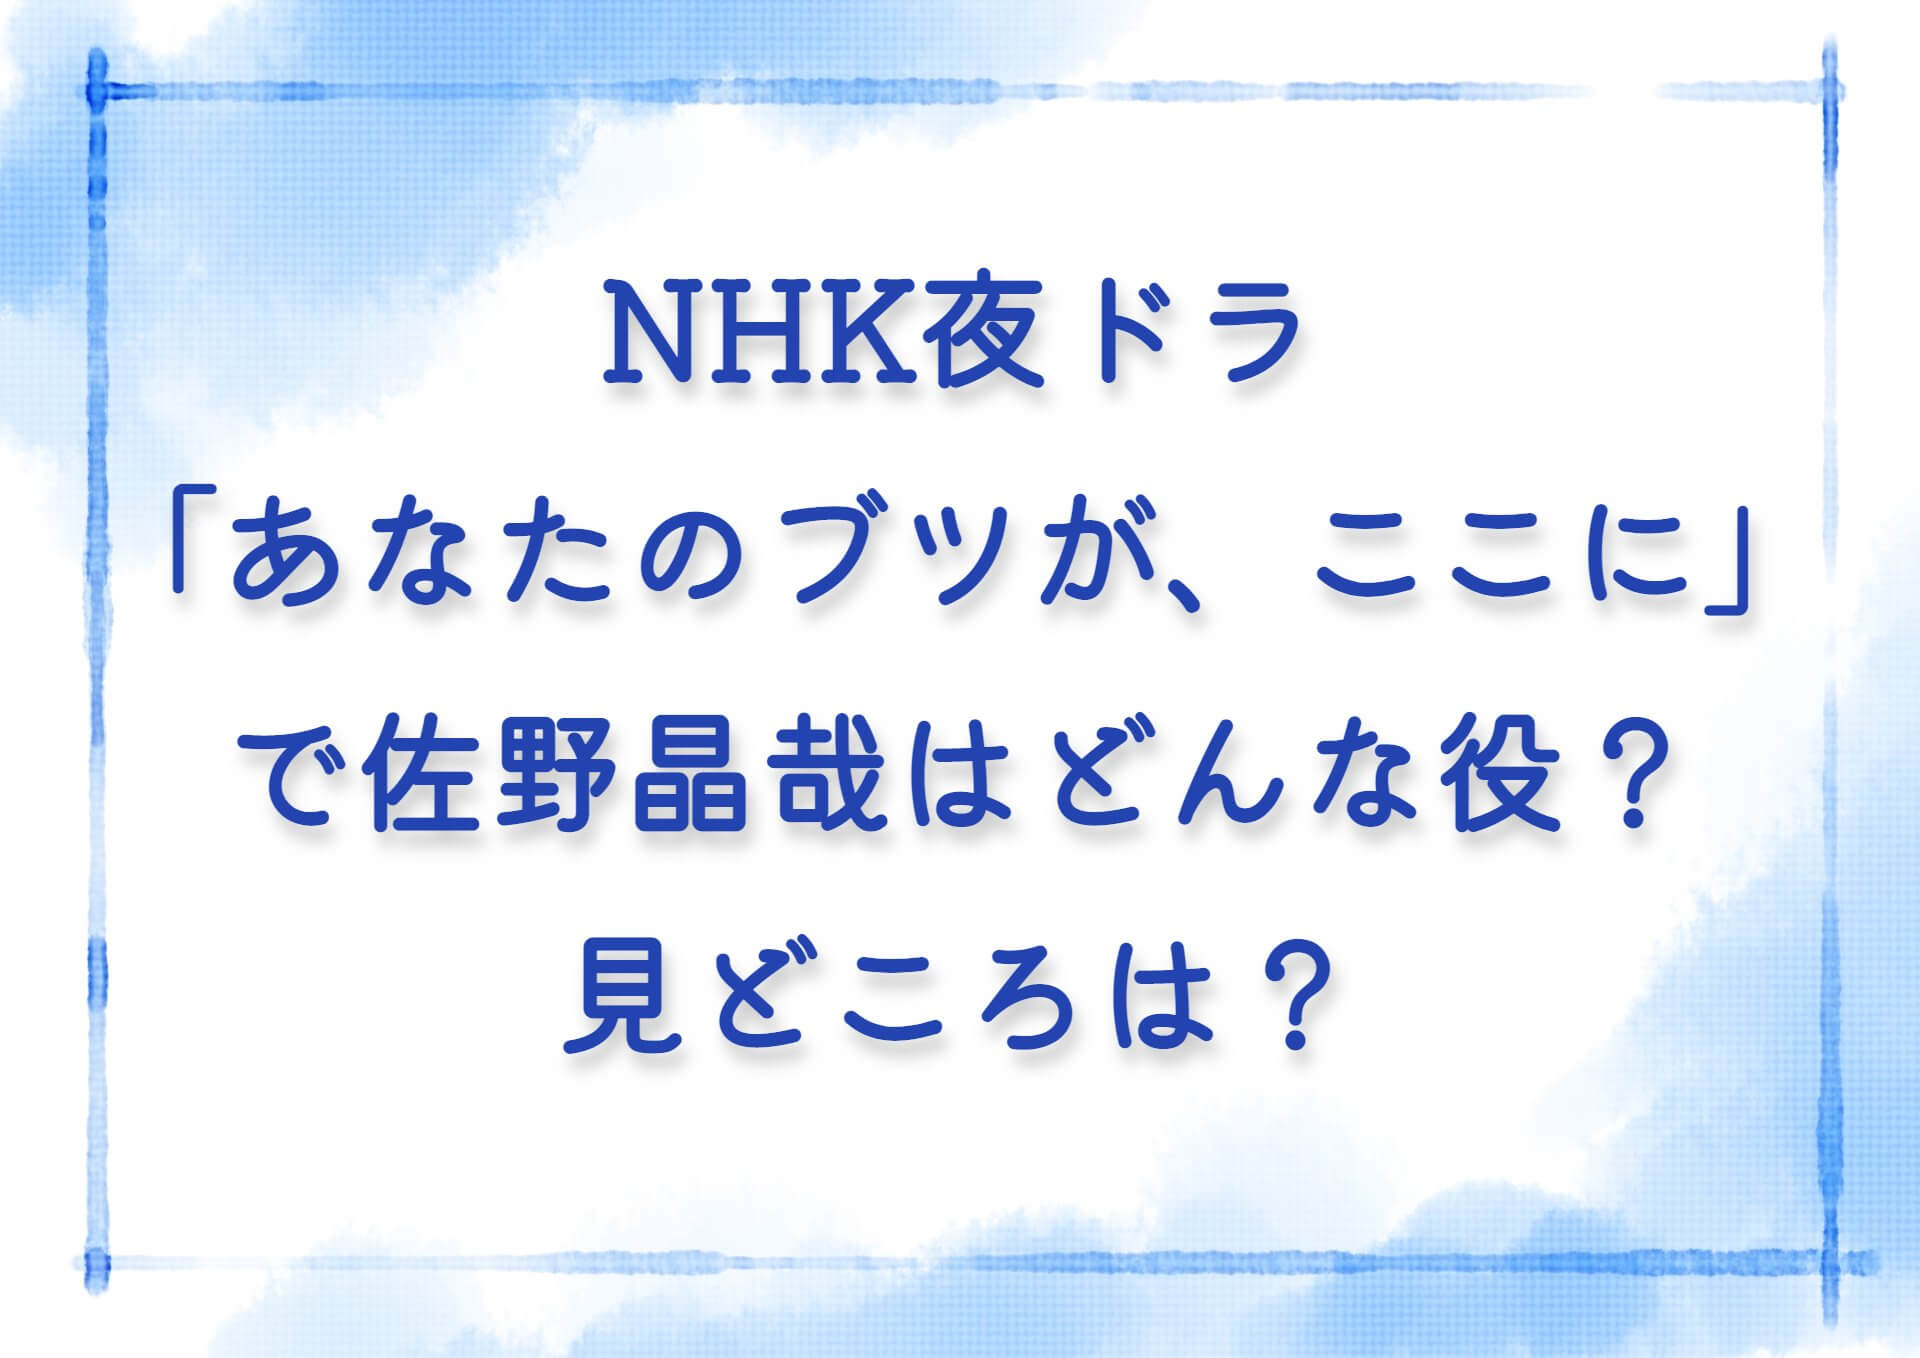 NHK夜ドラ「あなたのブツが、ここに」で佐野晶哉はどんな役？見どころは？キャバクラに行くシーン？